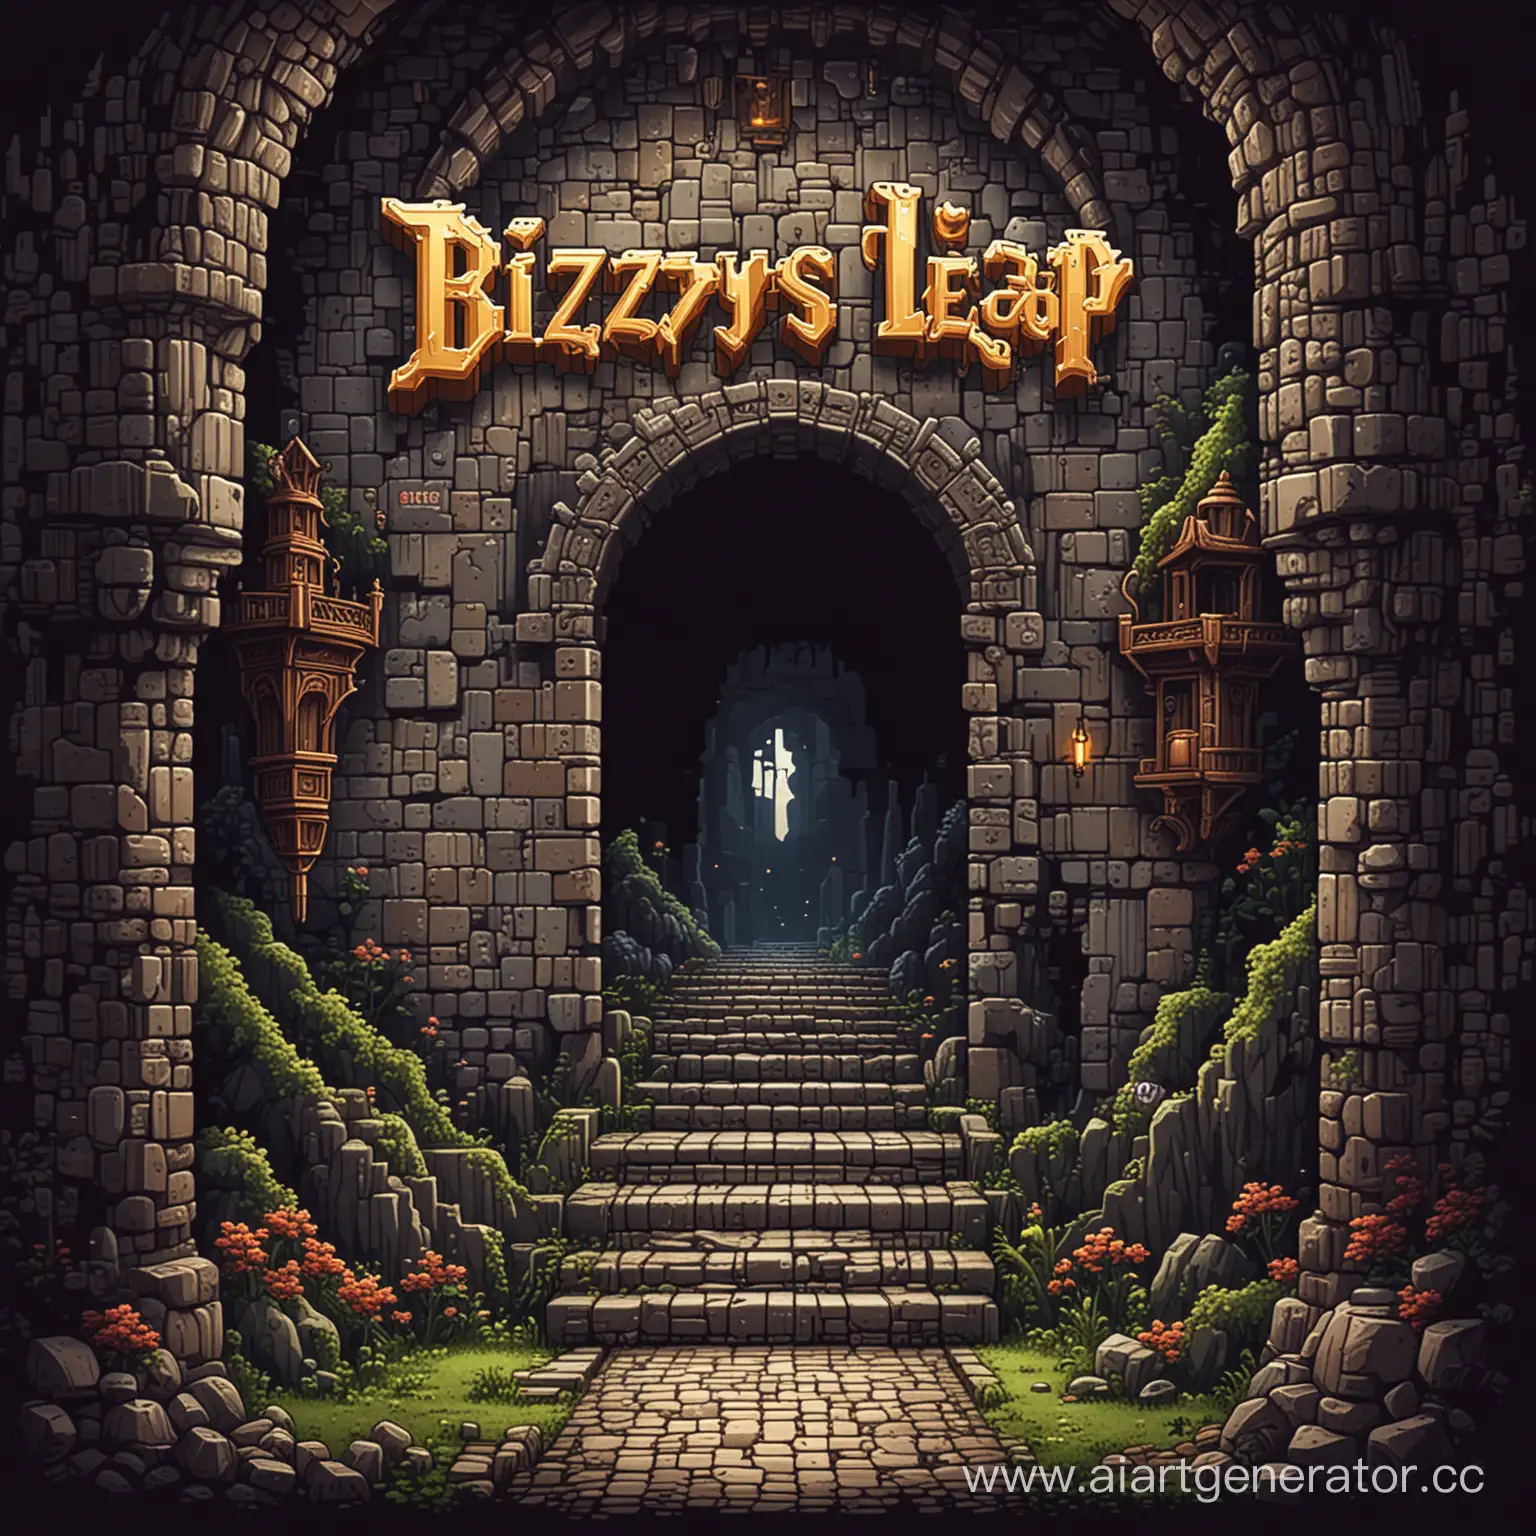 Создать надпись "Bizzy's Leap" в виде пиксель арта, в фентези стиле, в подземелье 